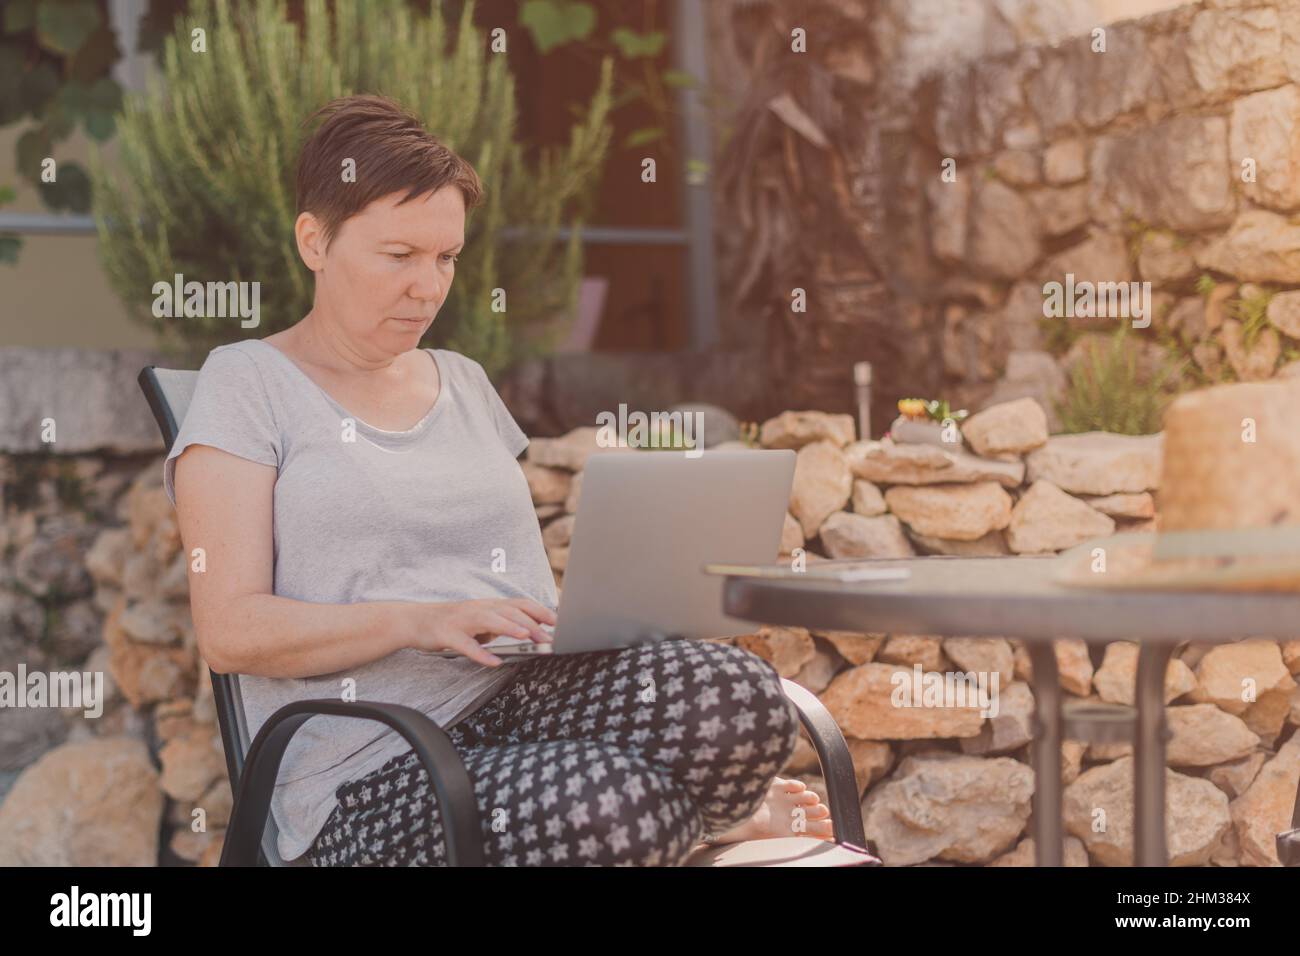 Seriöse freiberufliche Frau und digitale Nomade arbeiten auf Laptop-Computer während der Sommerferien Urlaub auf der Terrasse der Wohnung am Morgen Stockfoto